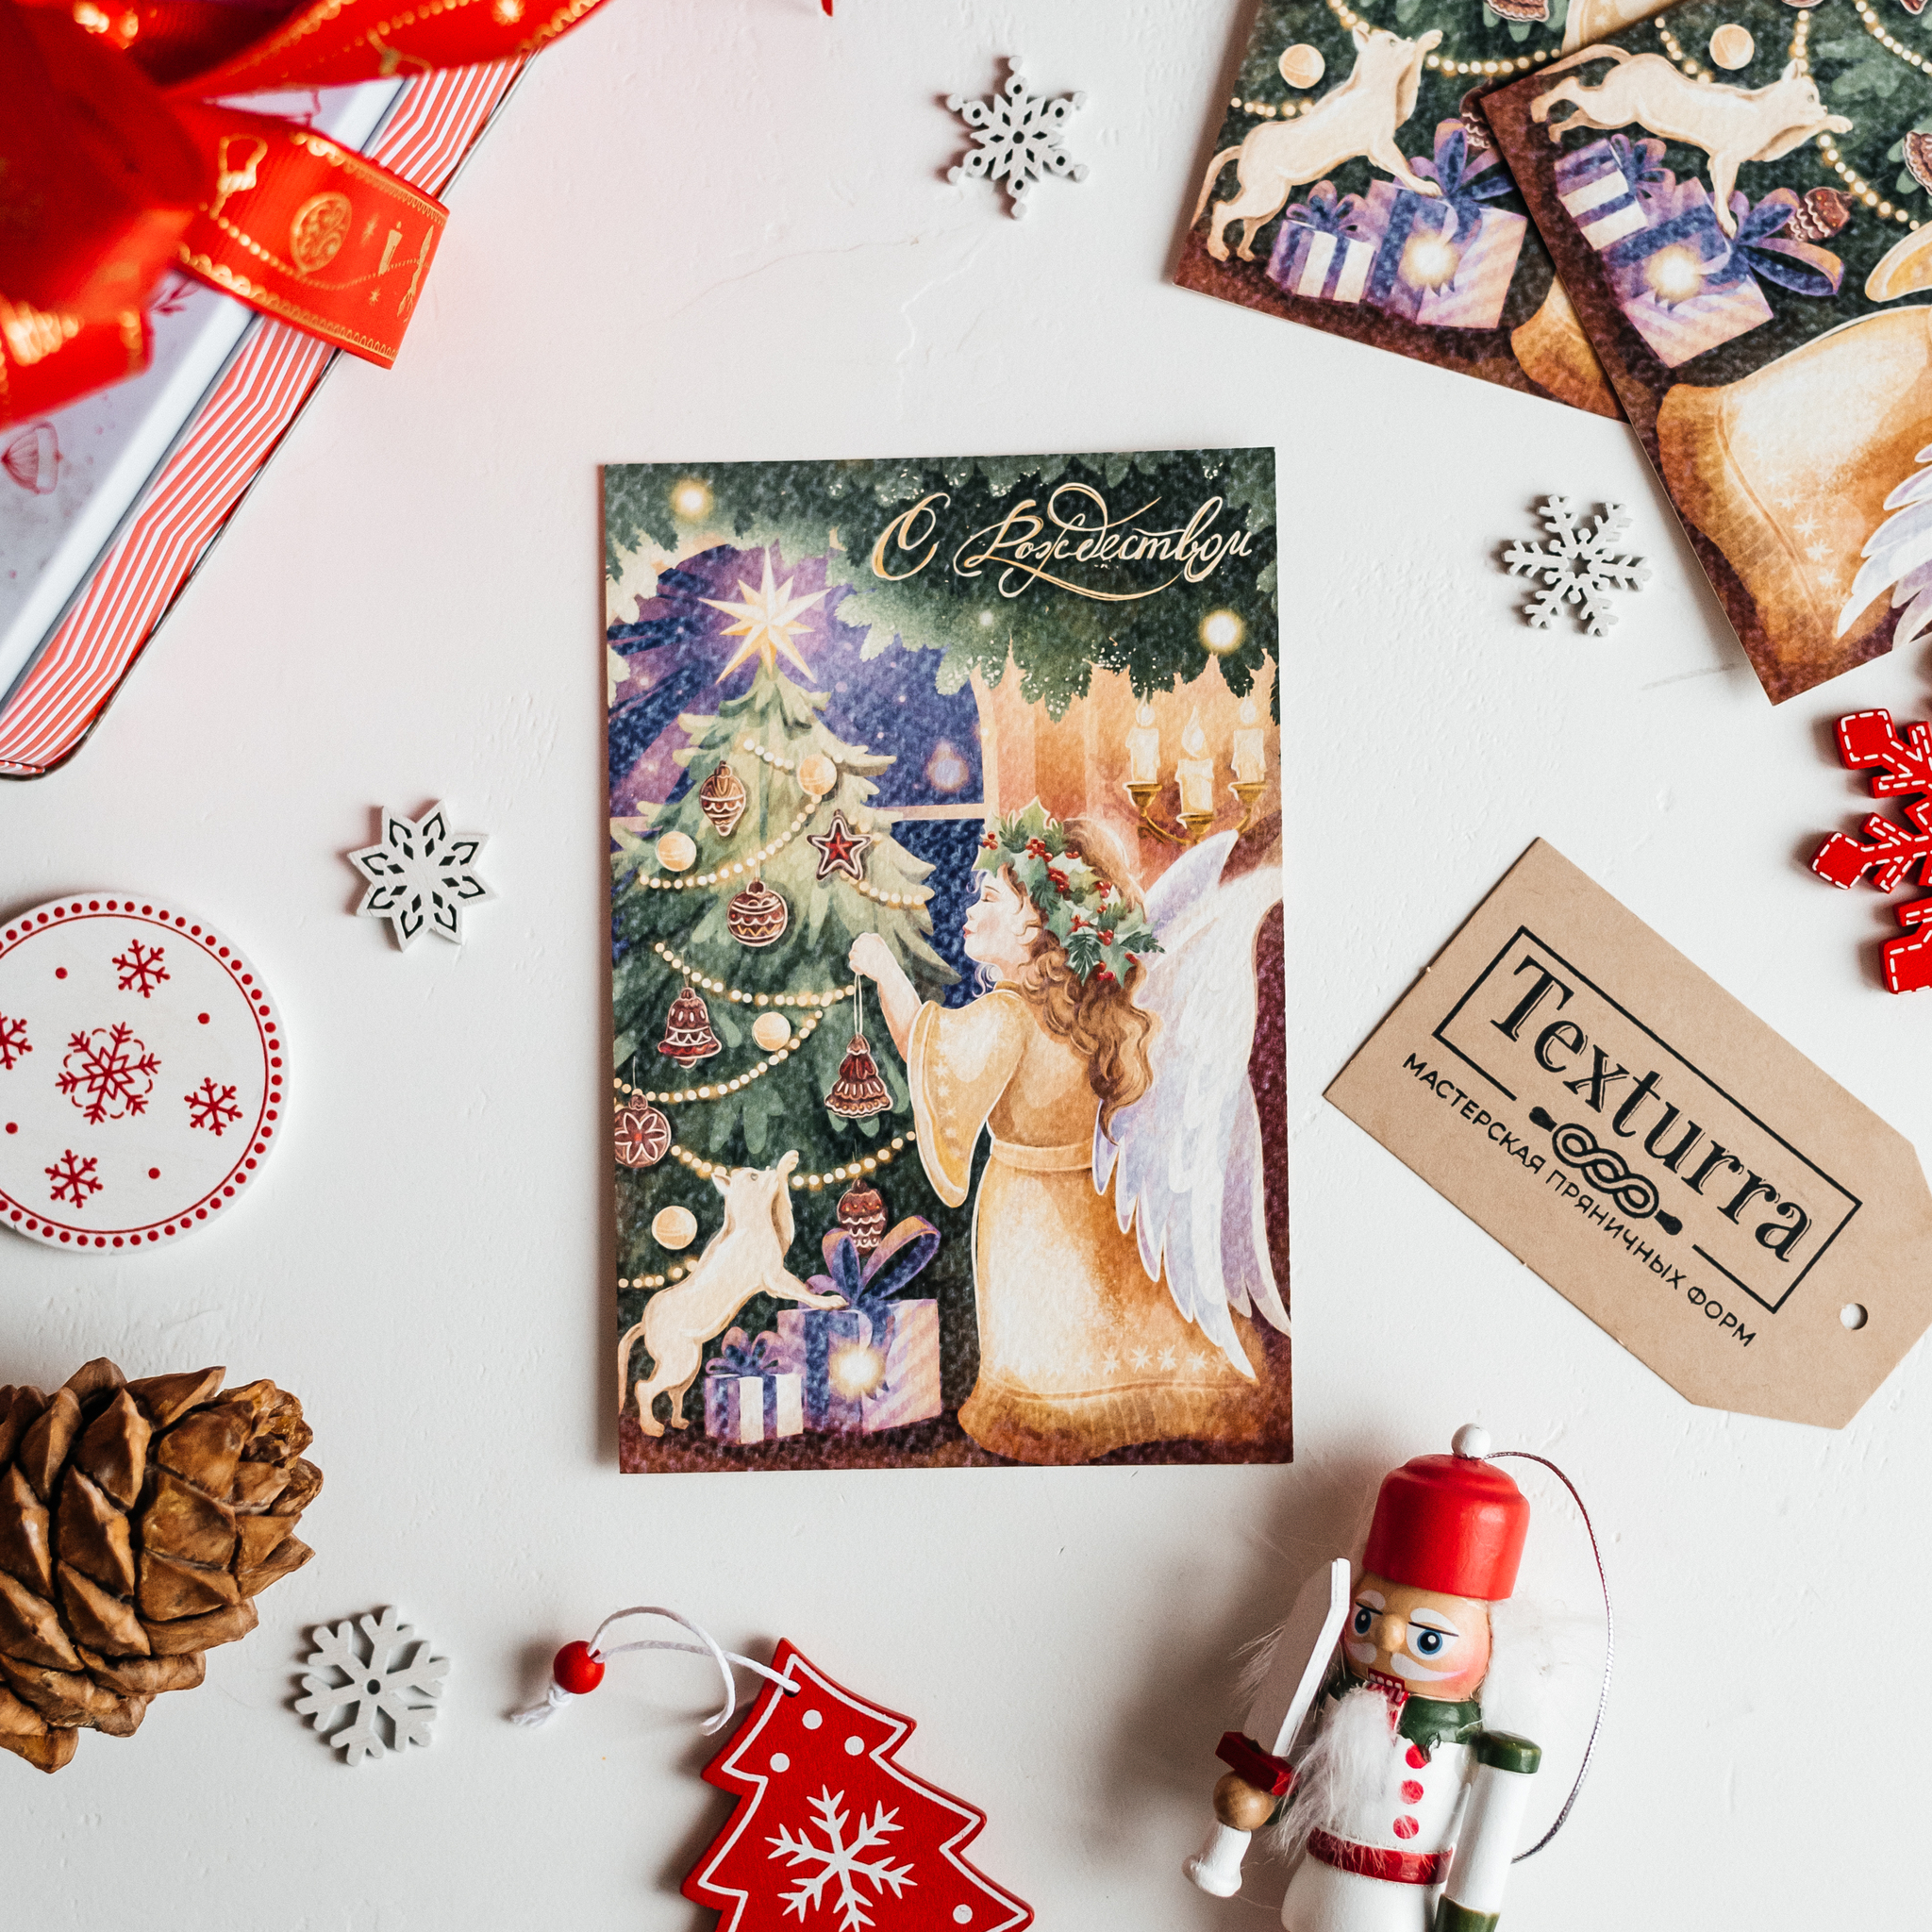 Картинки и открытки к Рождеству Христову